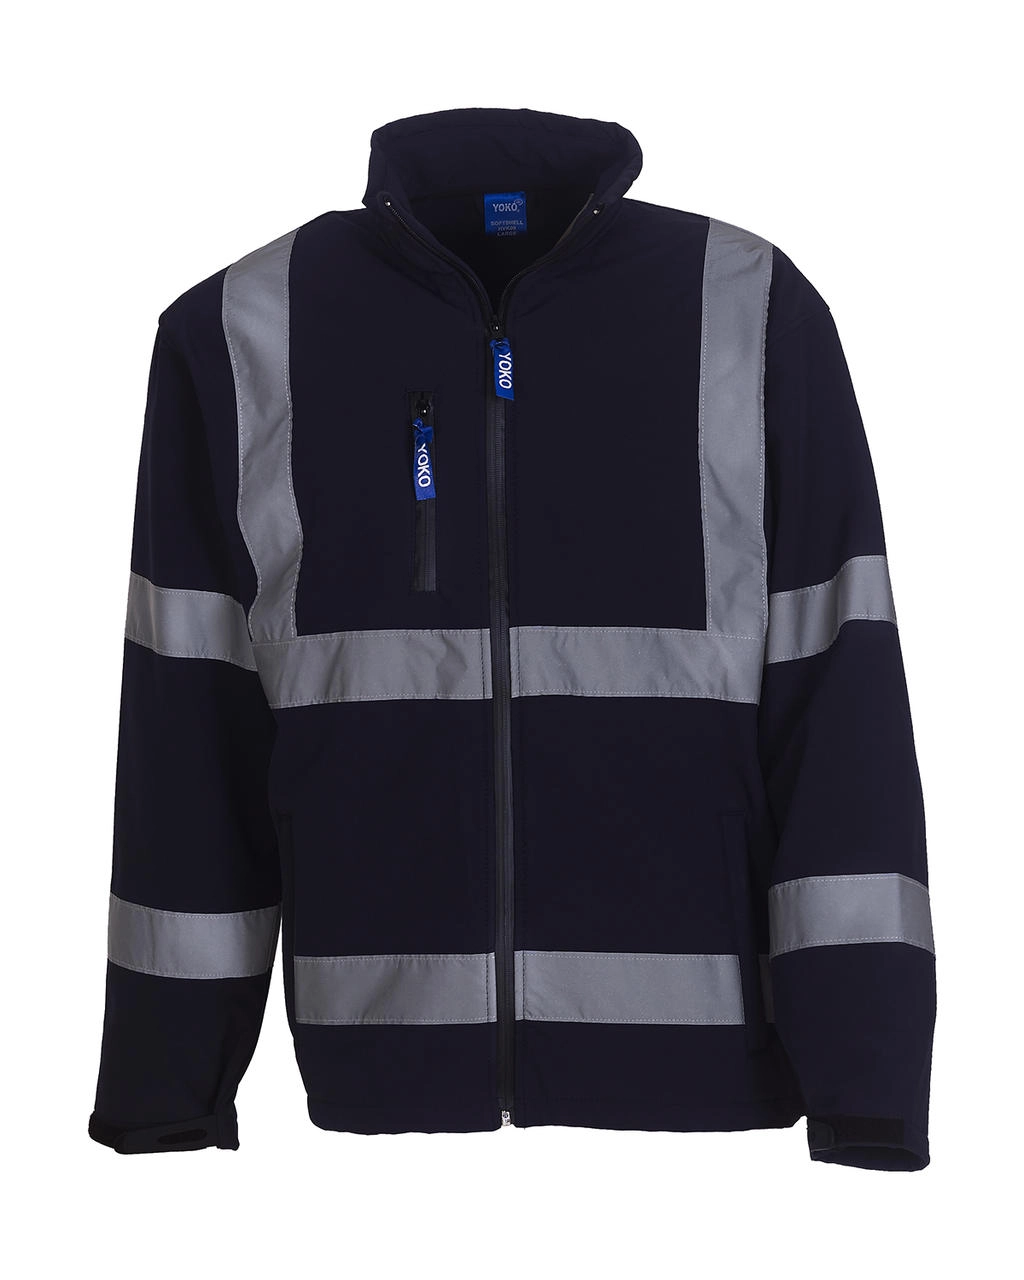 Fluo Softshell Jacket zum Besticken und Bedrucken in der Farbe Navy mit Ihren Logo, Schriftzug oder Motiv.